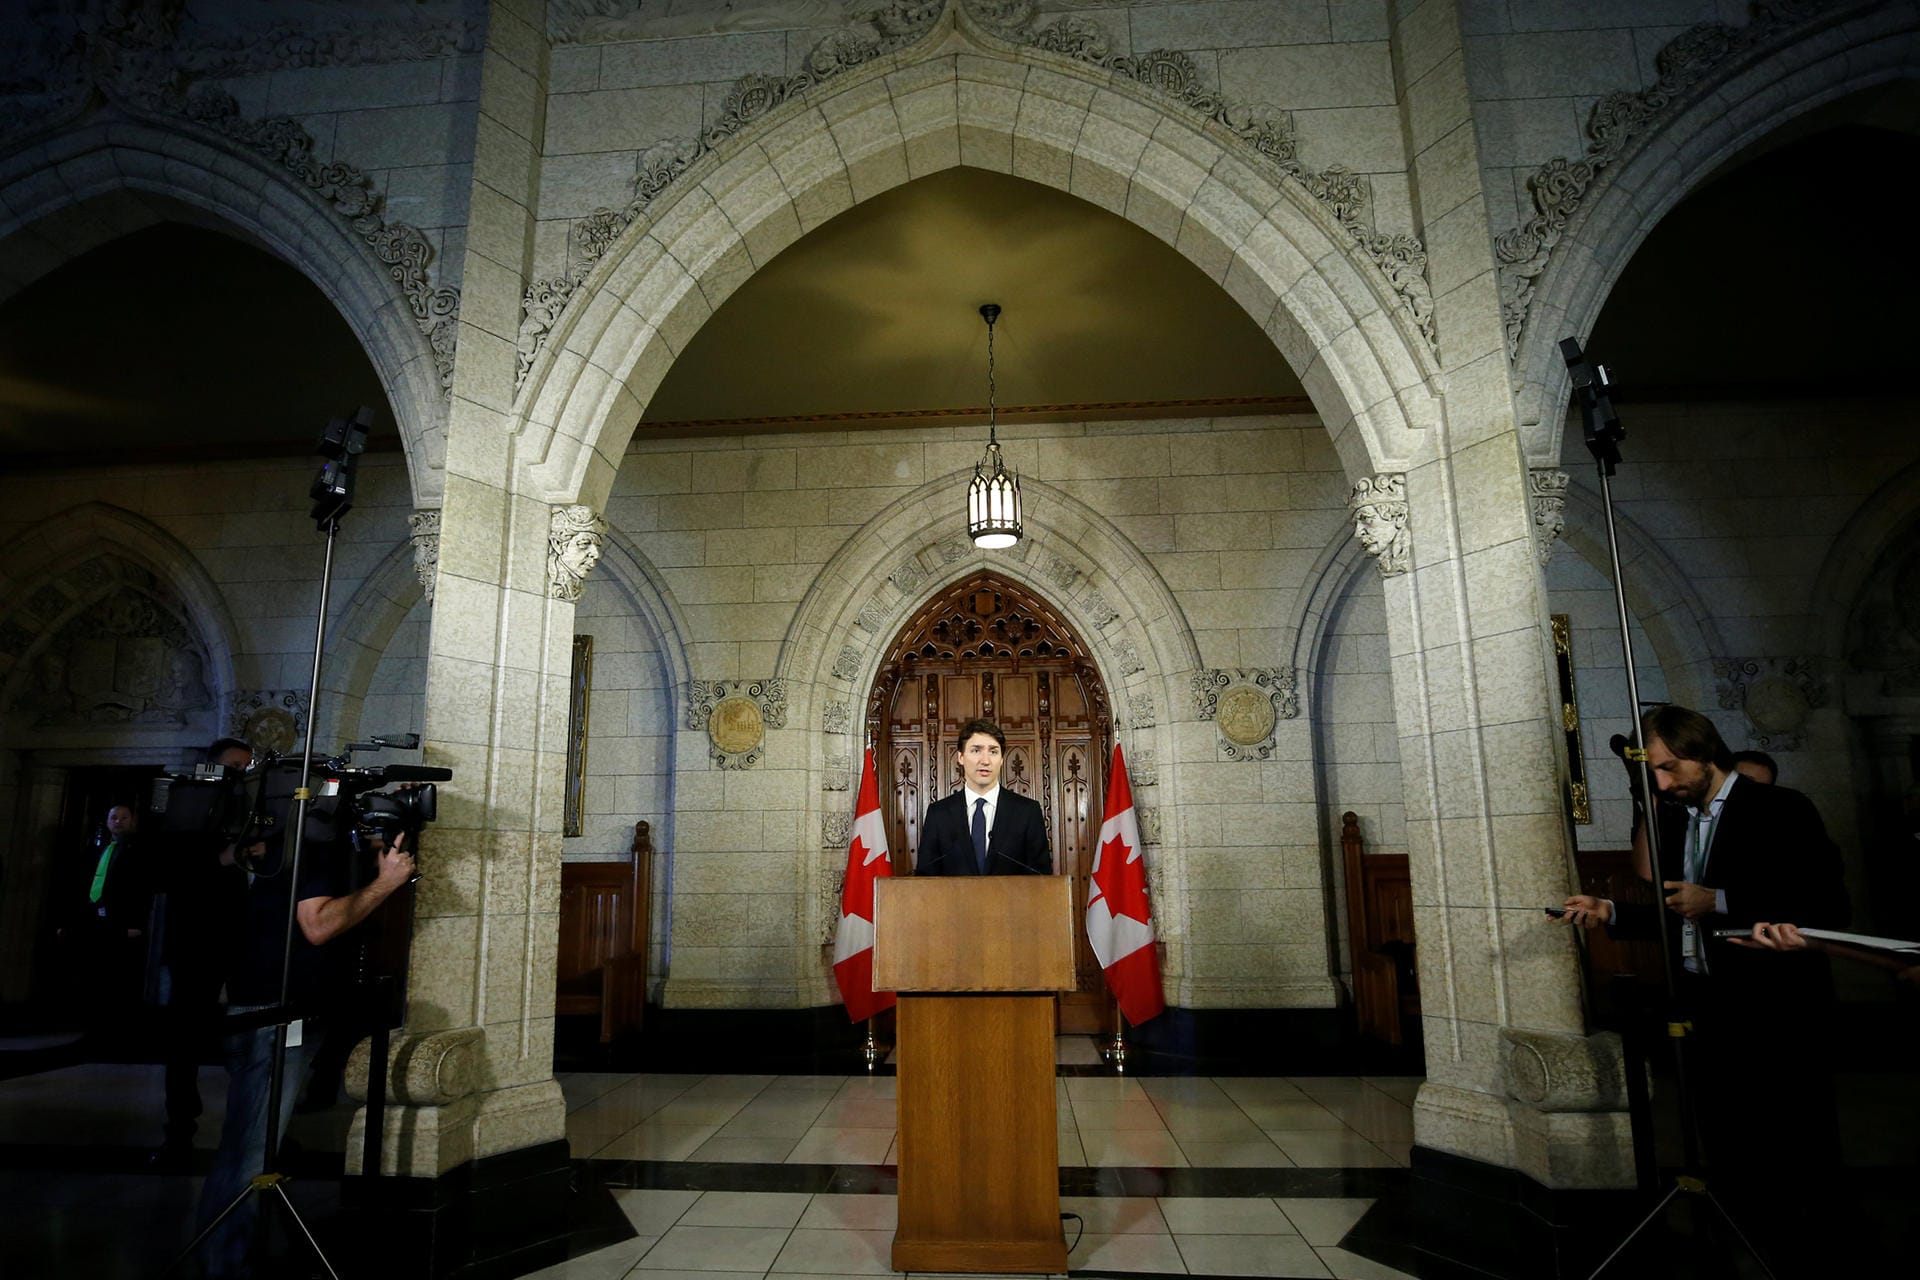 Kanadas Premierminister Justin Trudeau hielt im Parlament eine Rede. Sein Land werde tun, was möglich sei, um seine Bürger zu schützen – und gleichzeitig seinen Werten treu bleiben, sagte Trudeau auf einer Pressekonferenz: "Wir können uns als Kanadier nicht dazu entschließen, jeden einzelnen Tag in Angst zu leben, während wir unseren täglichen Geschäften nachgehen."